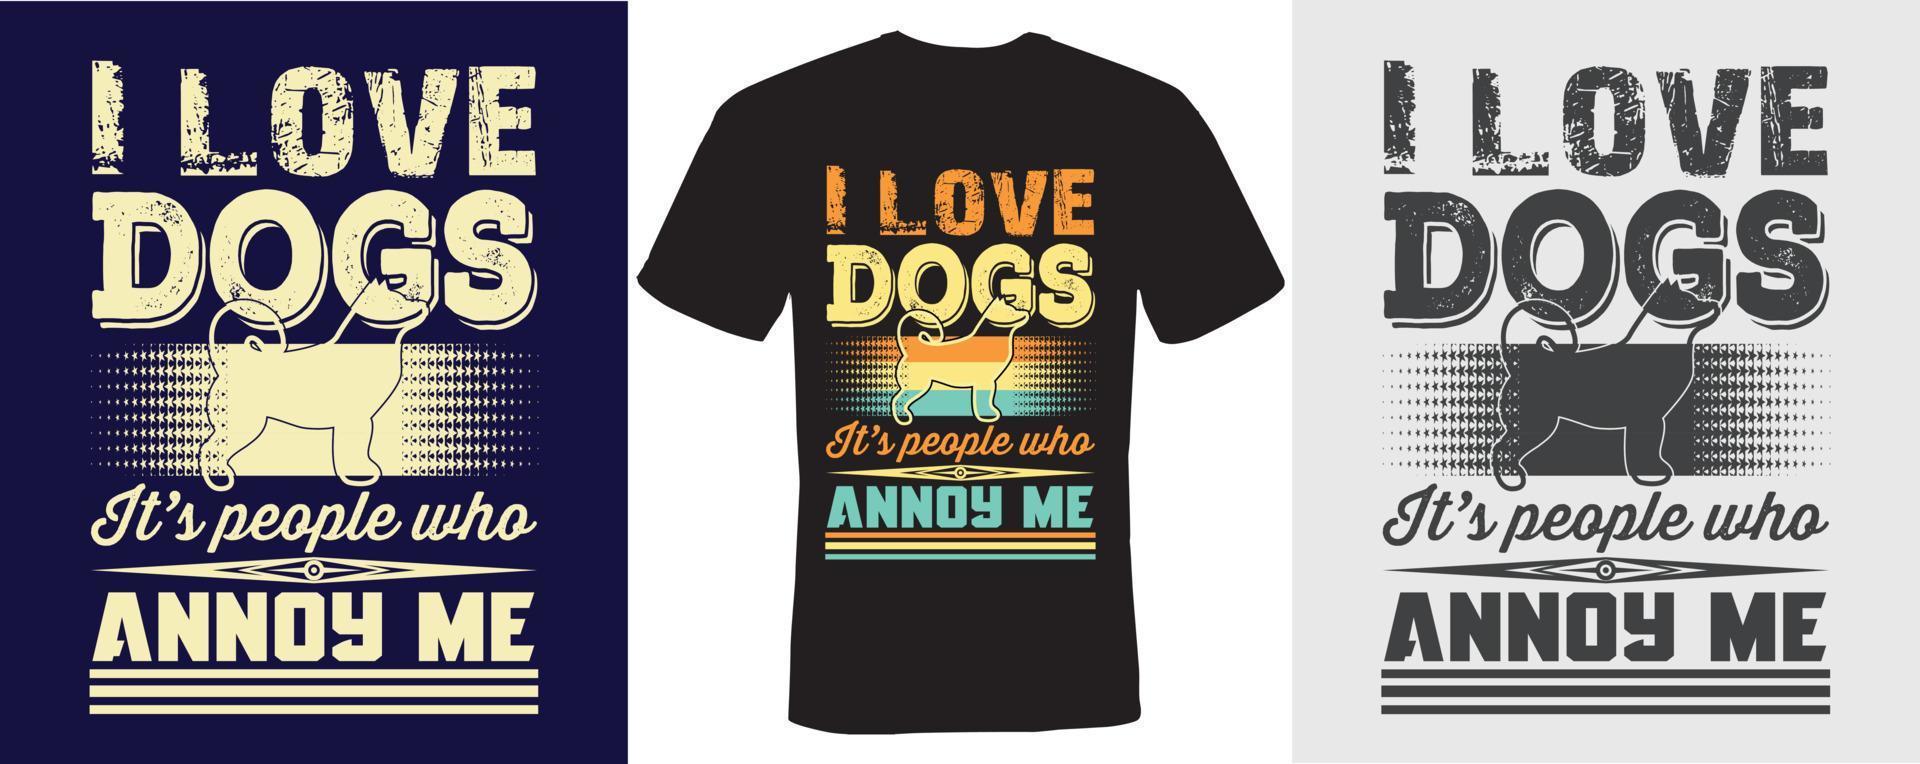 ich liebe hunde es sind leute die mich nerven t-shirt design für hunde vektor